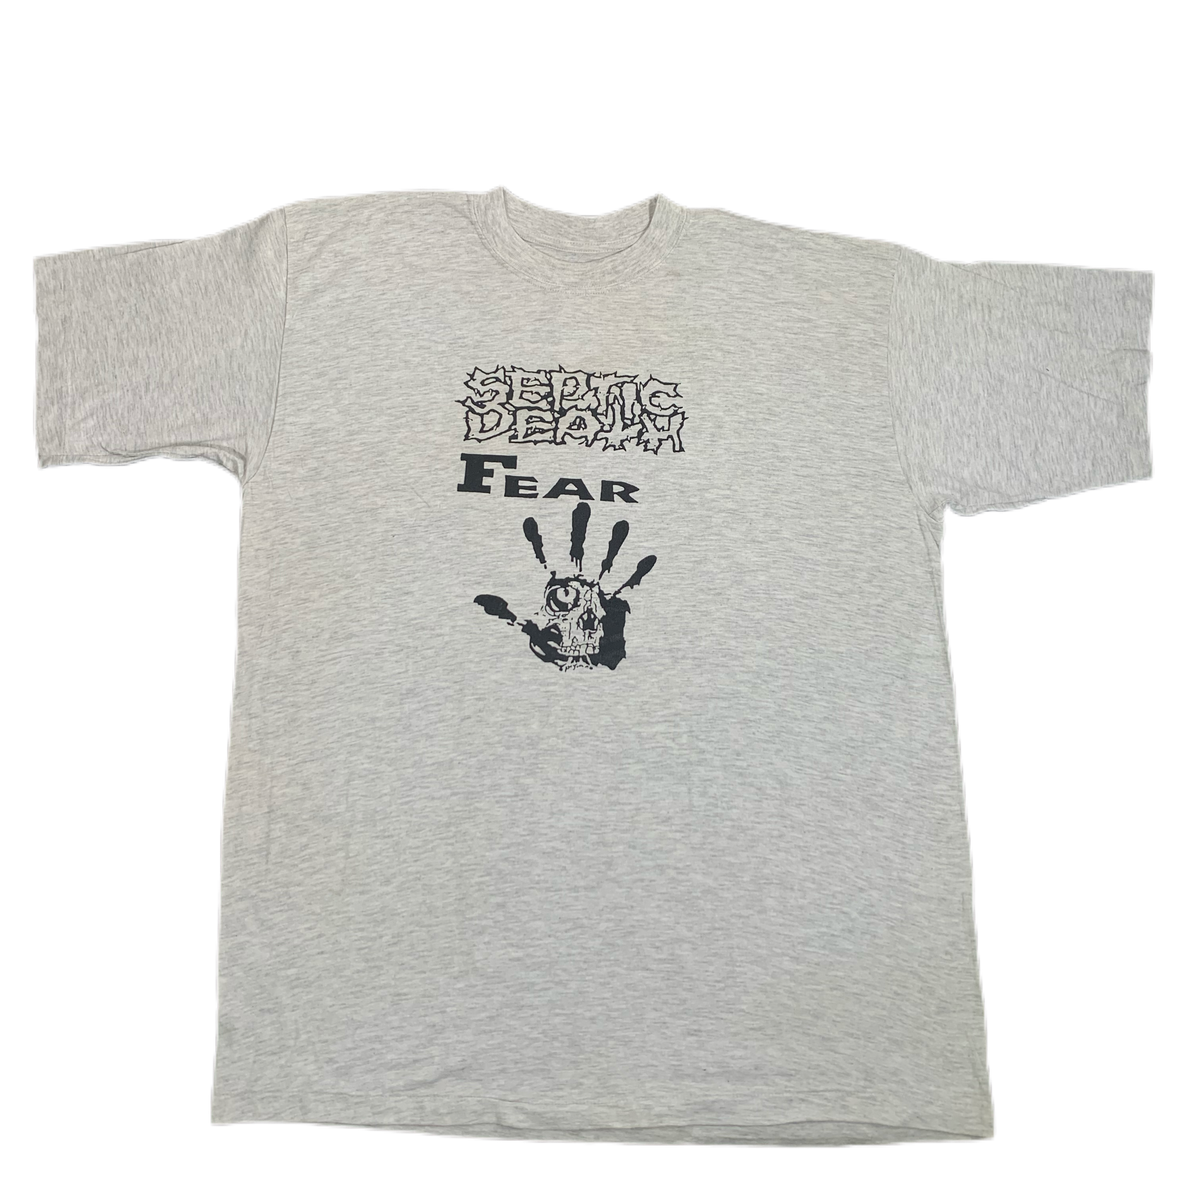 Vintage Septic Death &quot;Fear&quot; T-Shirt - jointcustodydc